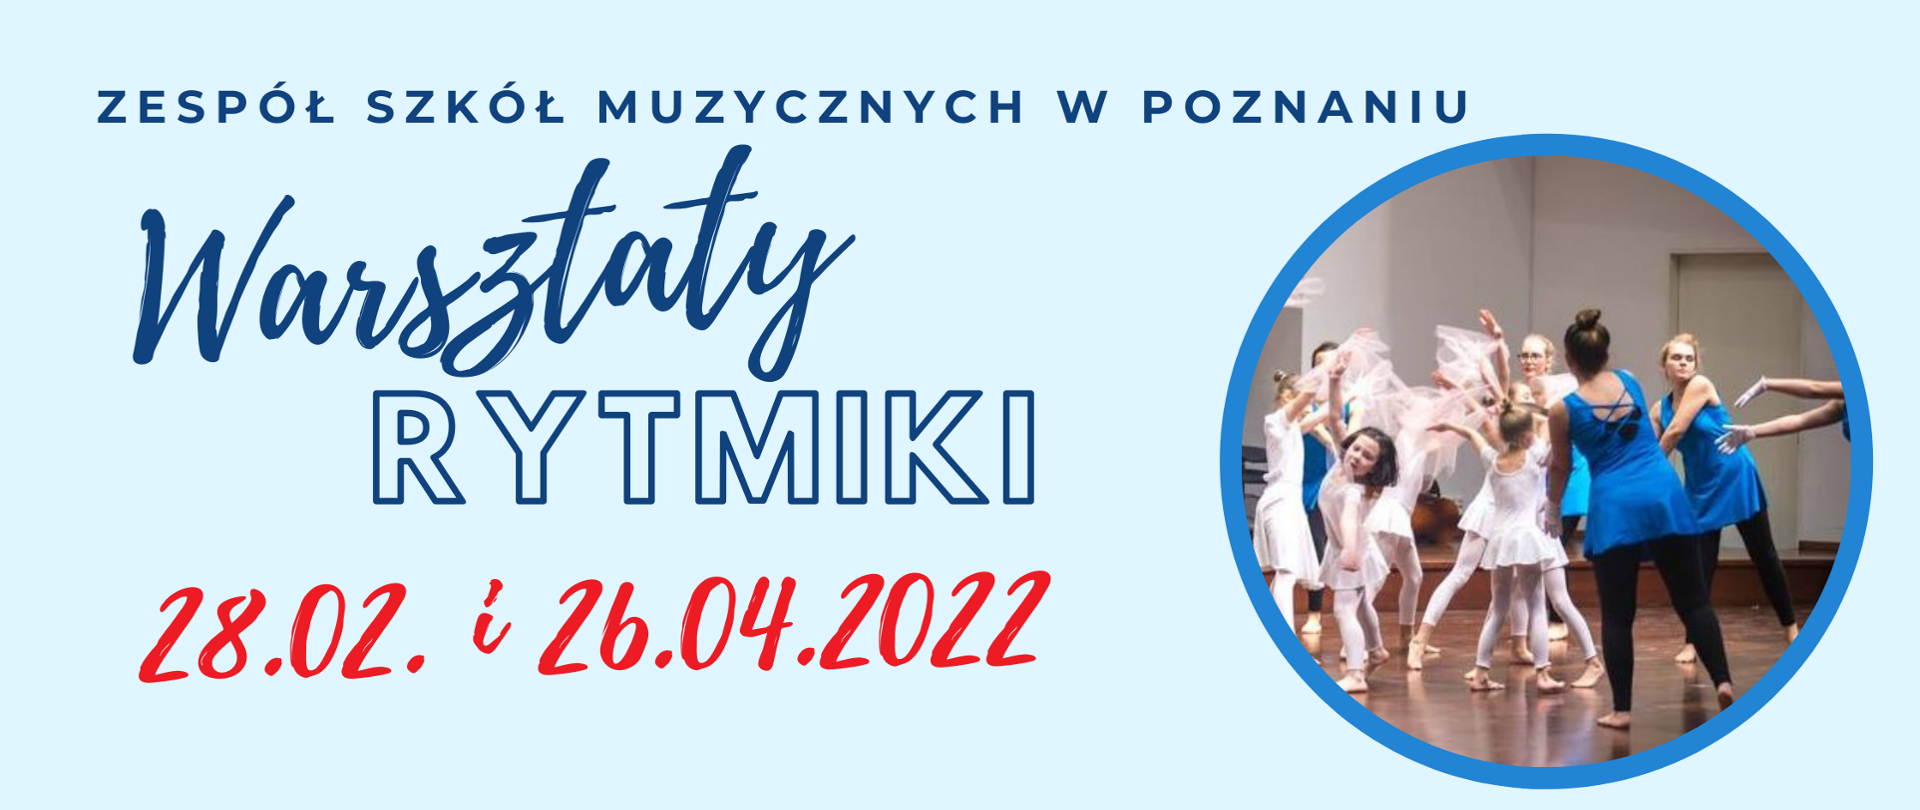 Jasno niebieski plakat z napisem Warsztaty rytmiki 28.02 i 26.04.2022. Po prawej stronie okrągłe zdjęcie tańczących uczennic